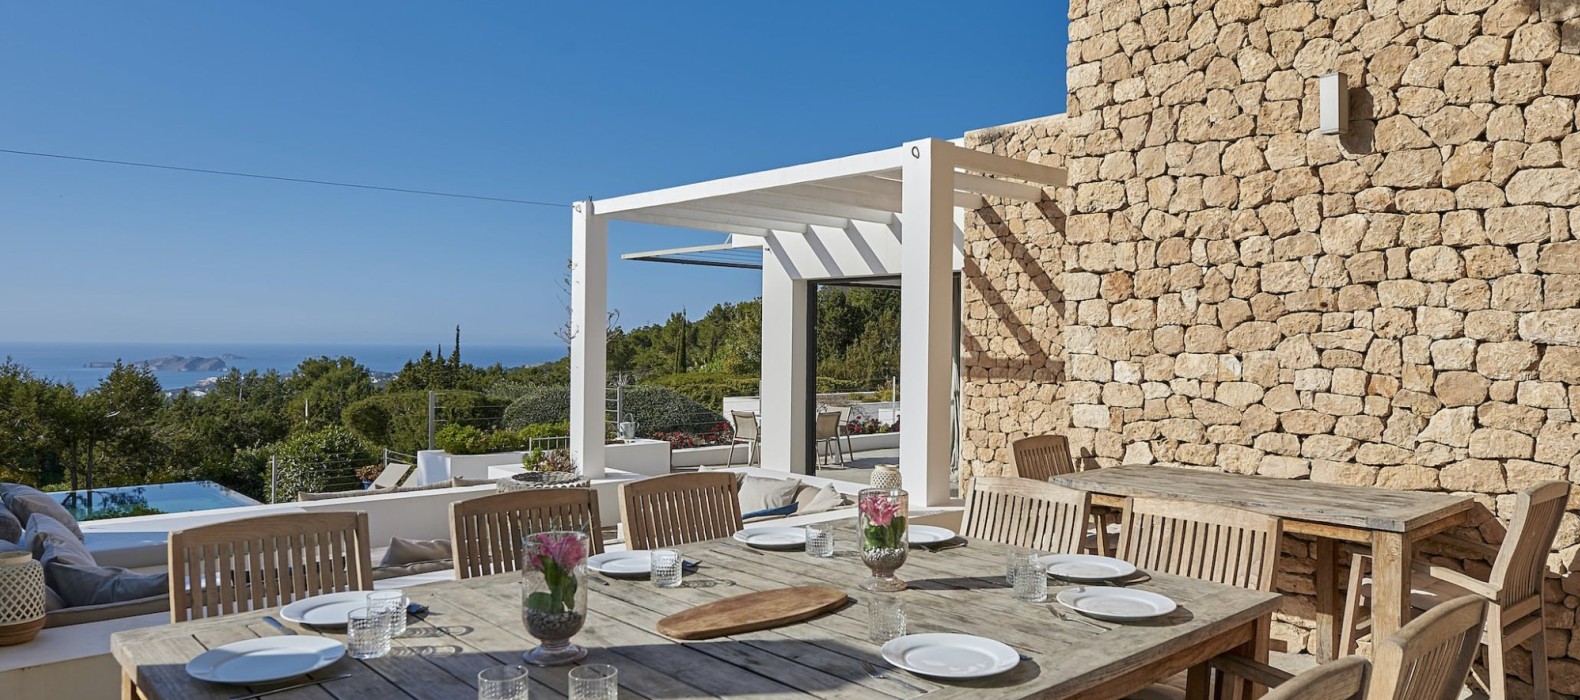 Exterior dining pool of Villa Rivianna in Ibiza